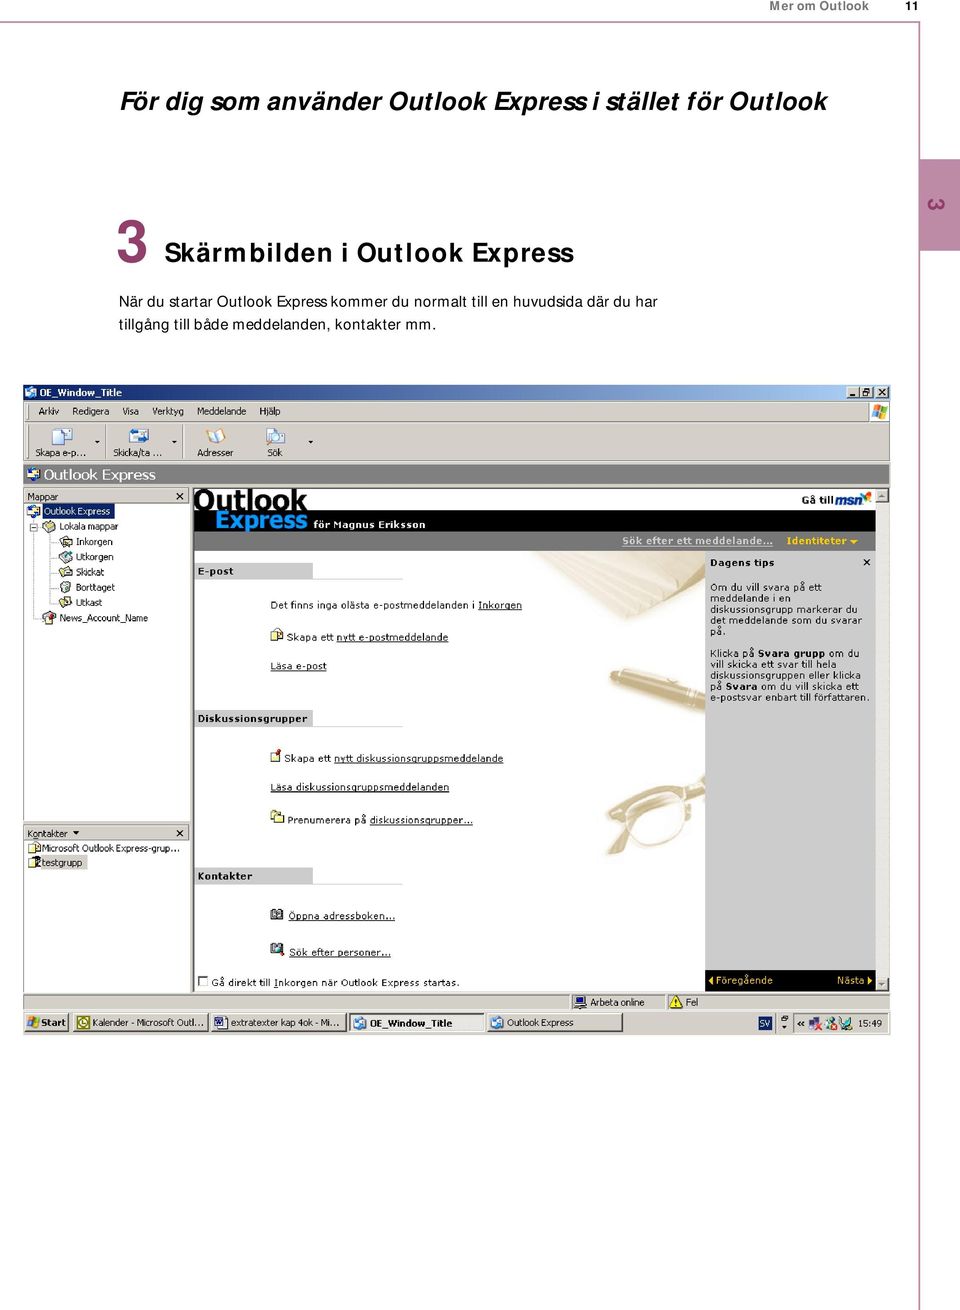 Outlook Express kommer du normalt till en huvudsida